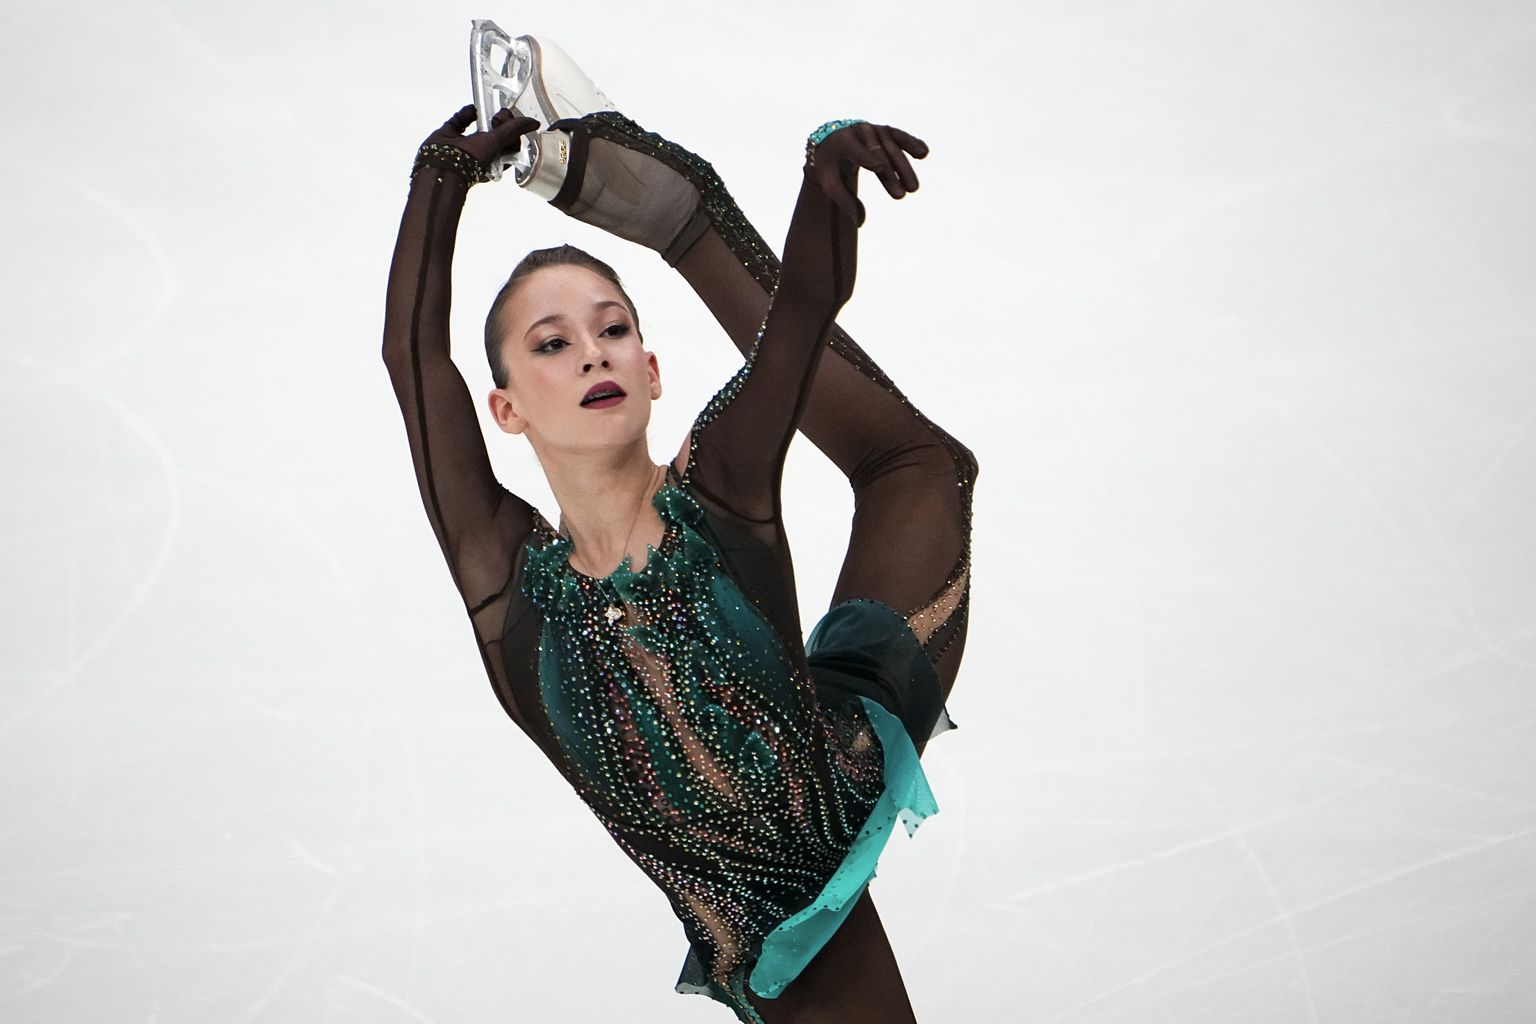 Venemaa meistriks naiste üksiksõidus krooniti 15-aastane Sofia Akatjeva.